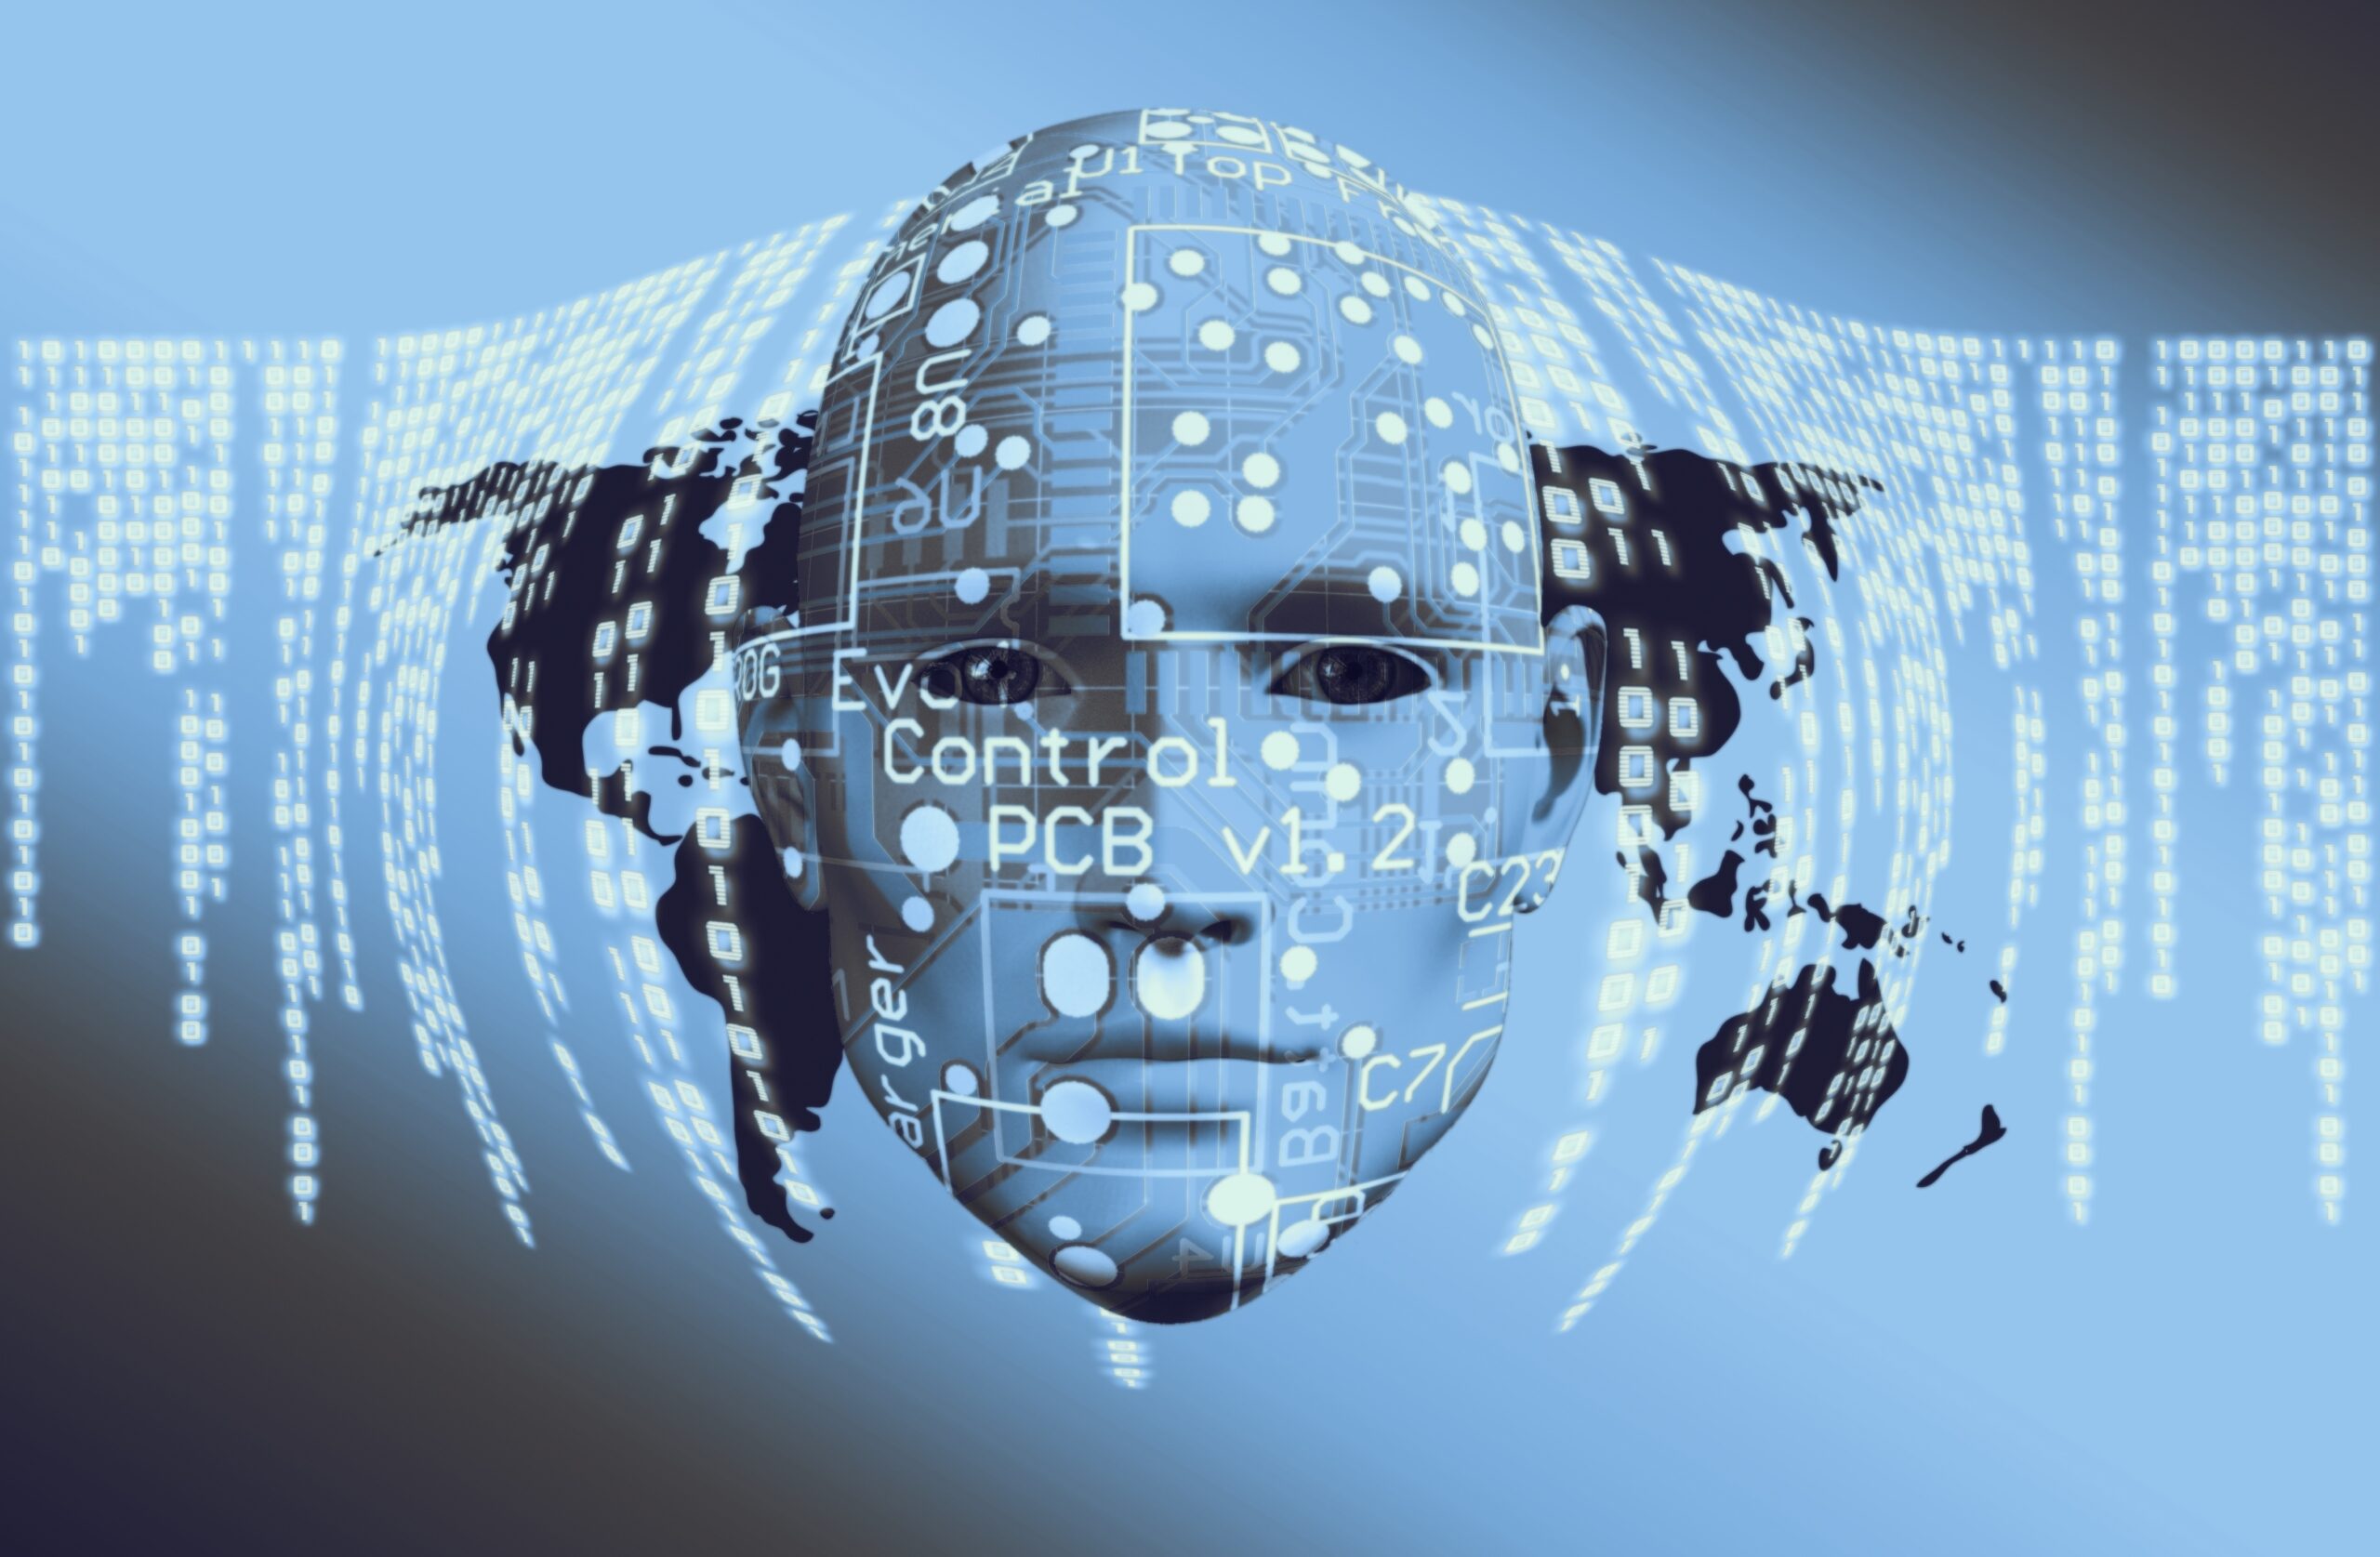 Ludzka twarz z elektronicznymi obwodami na tle mapy świata utworzonej z cyfr binarnych.